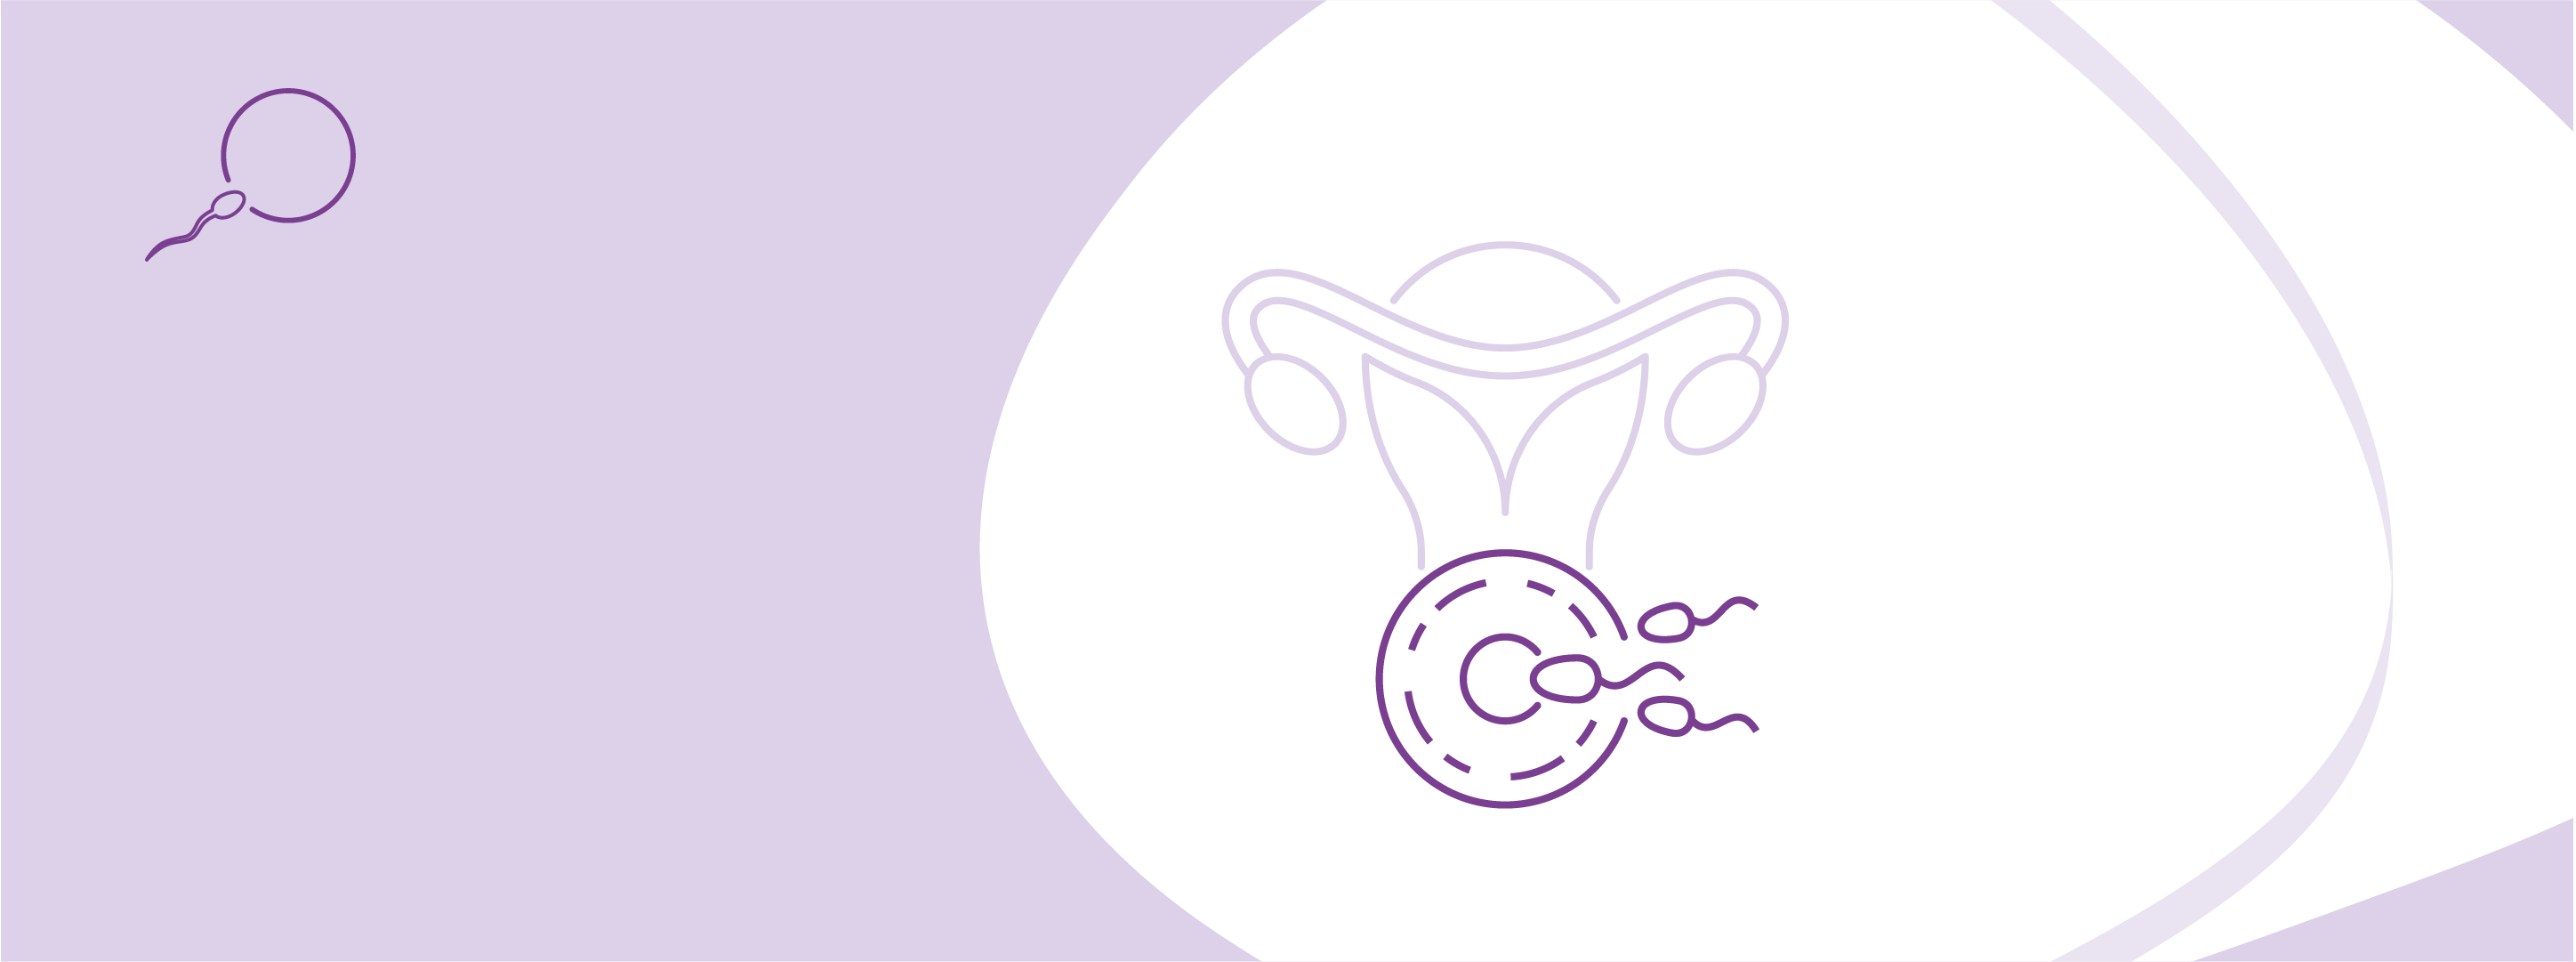 Програма ЕКЗ зі стимуляцією та кріоконсервацією ембріонів